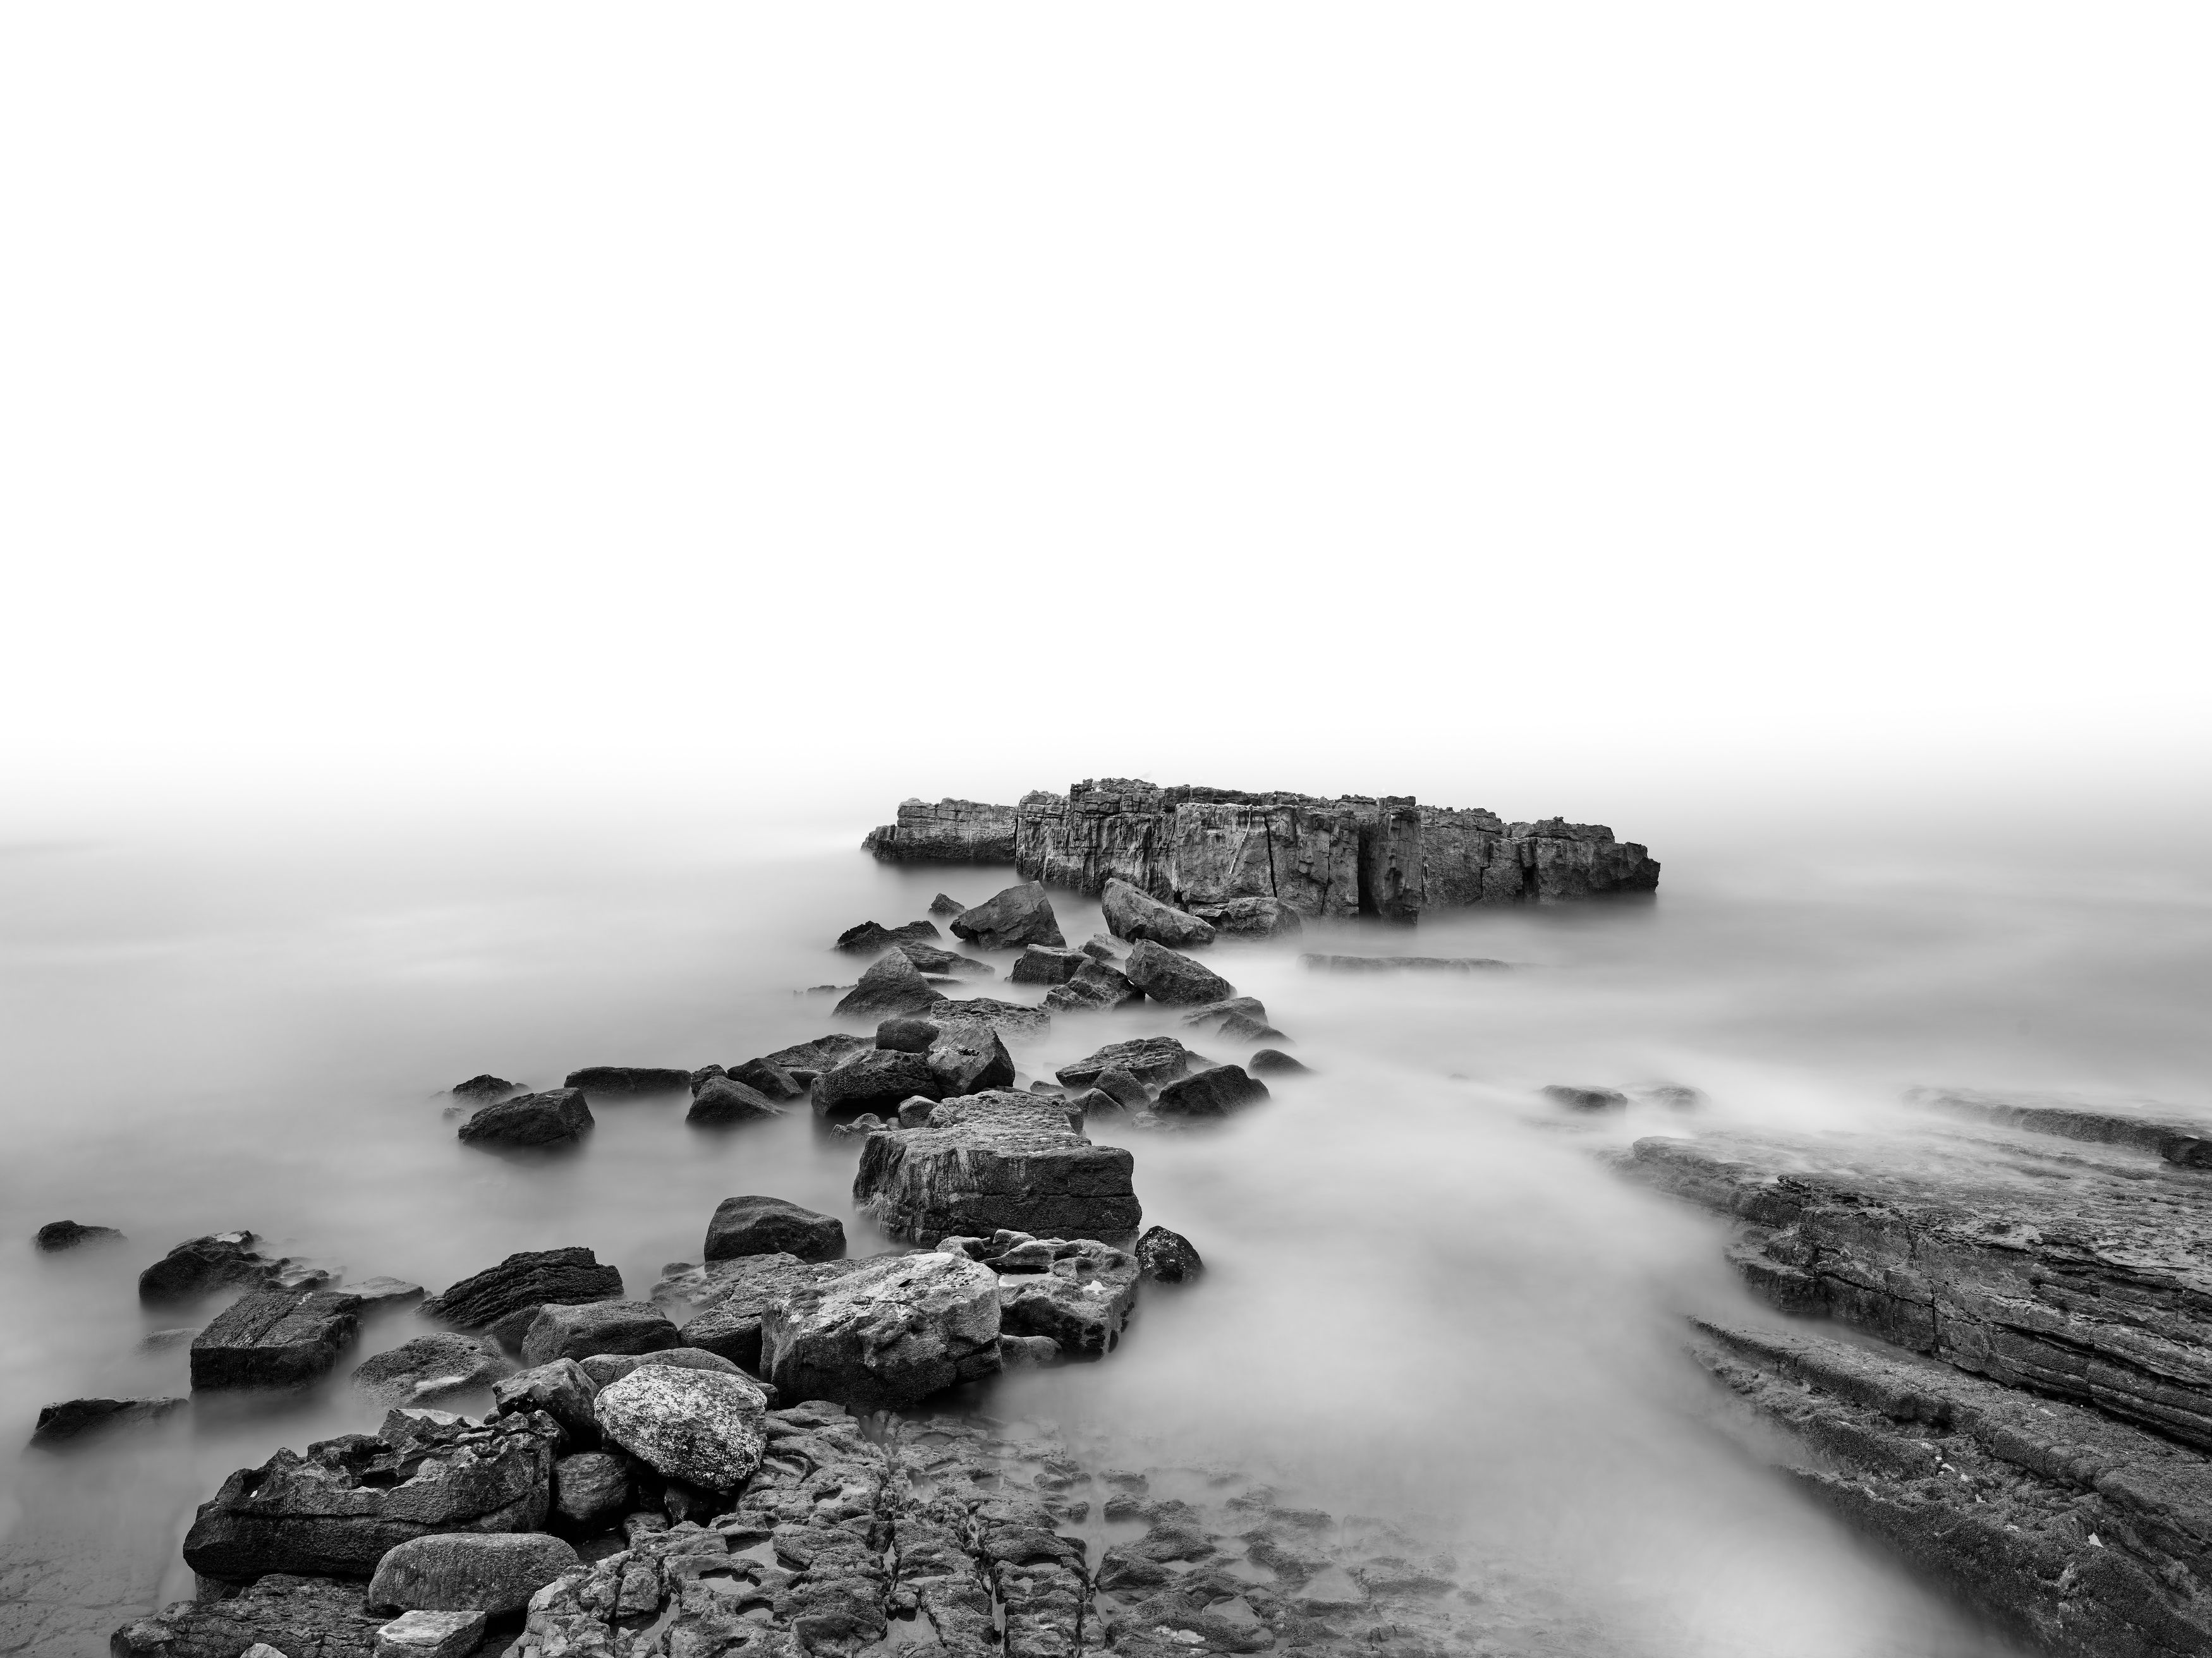 Marocco,rocks,long exposure, landscape,phase one IQ4,medium format,Phase one XT,Black and white, Felix Ostapenko